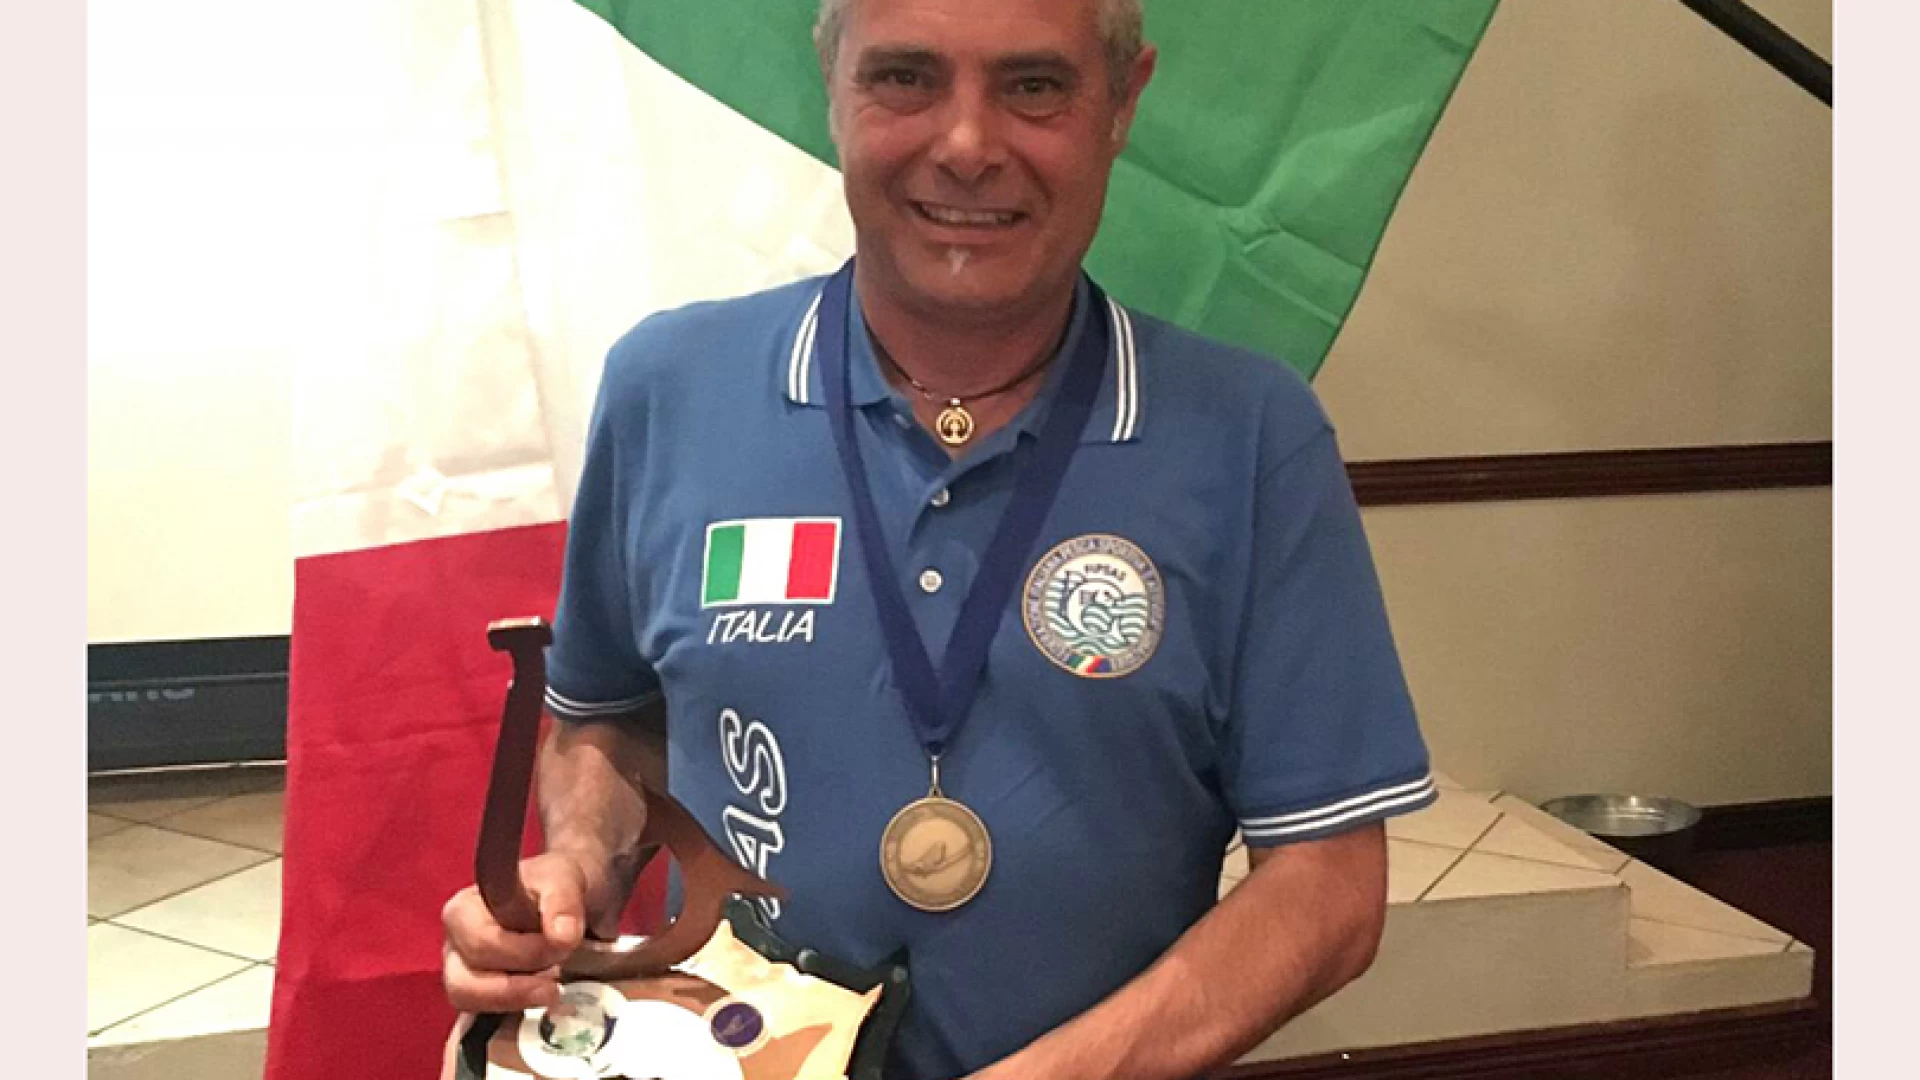 Pesca a mosca: Armando Di Giacomo torna dal Sudafrica con la medaglia di bronzo a squadre con la nazionale italiana.